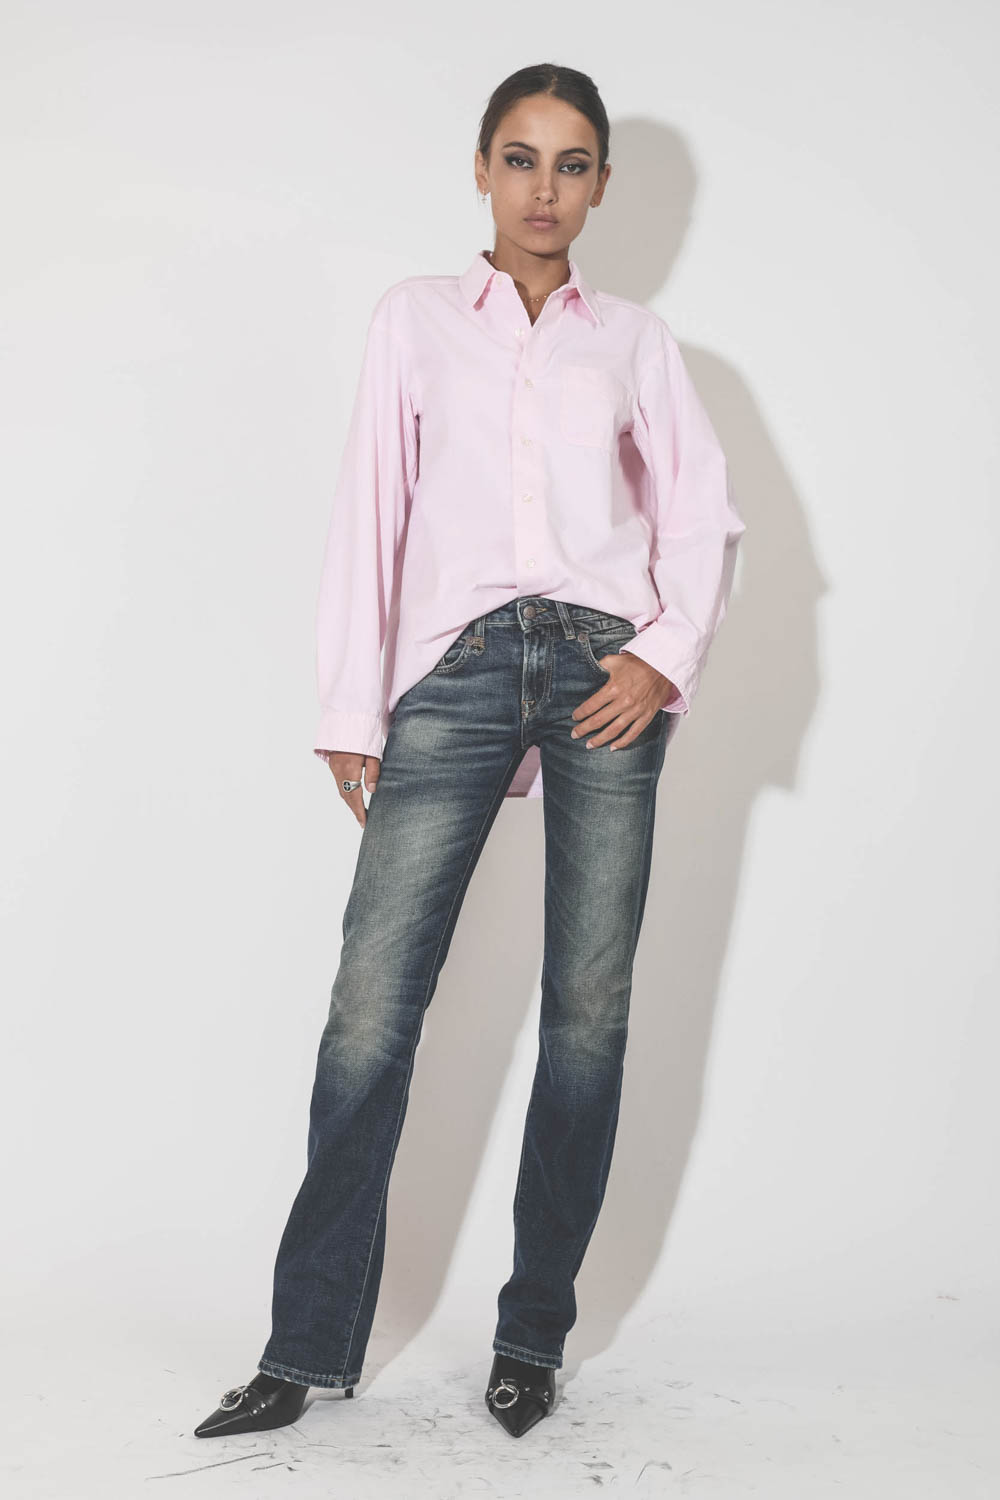 Chemise oversize en coton rose r13. Porté avec un jeans taille basse. 